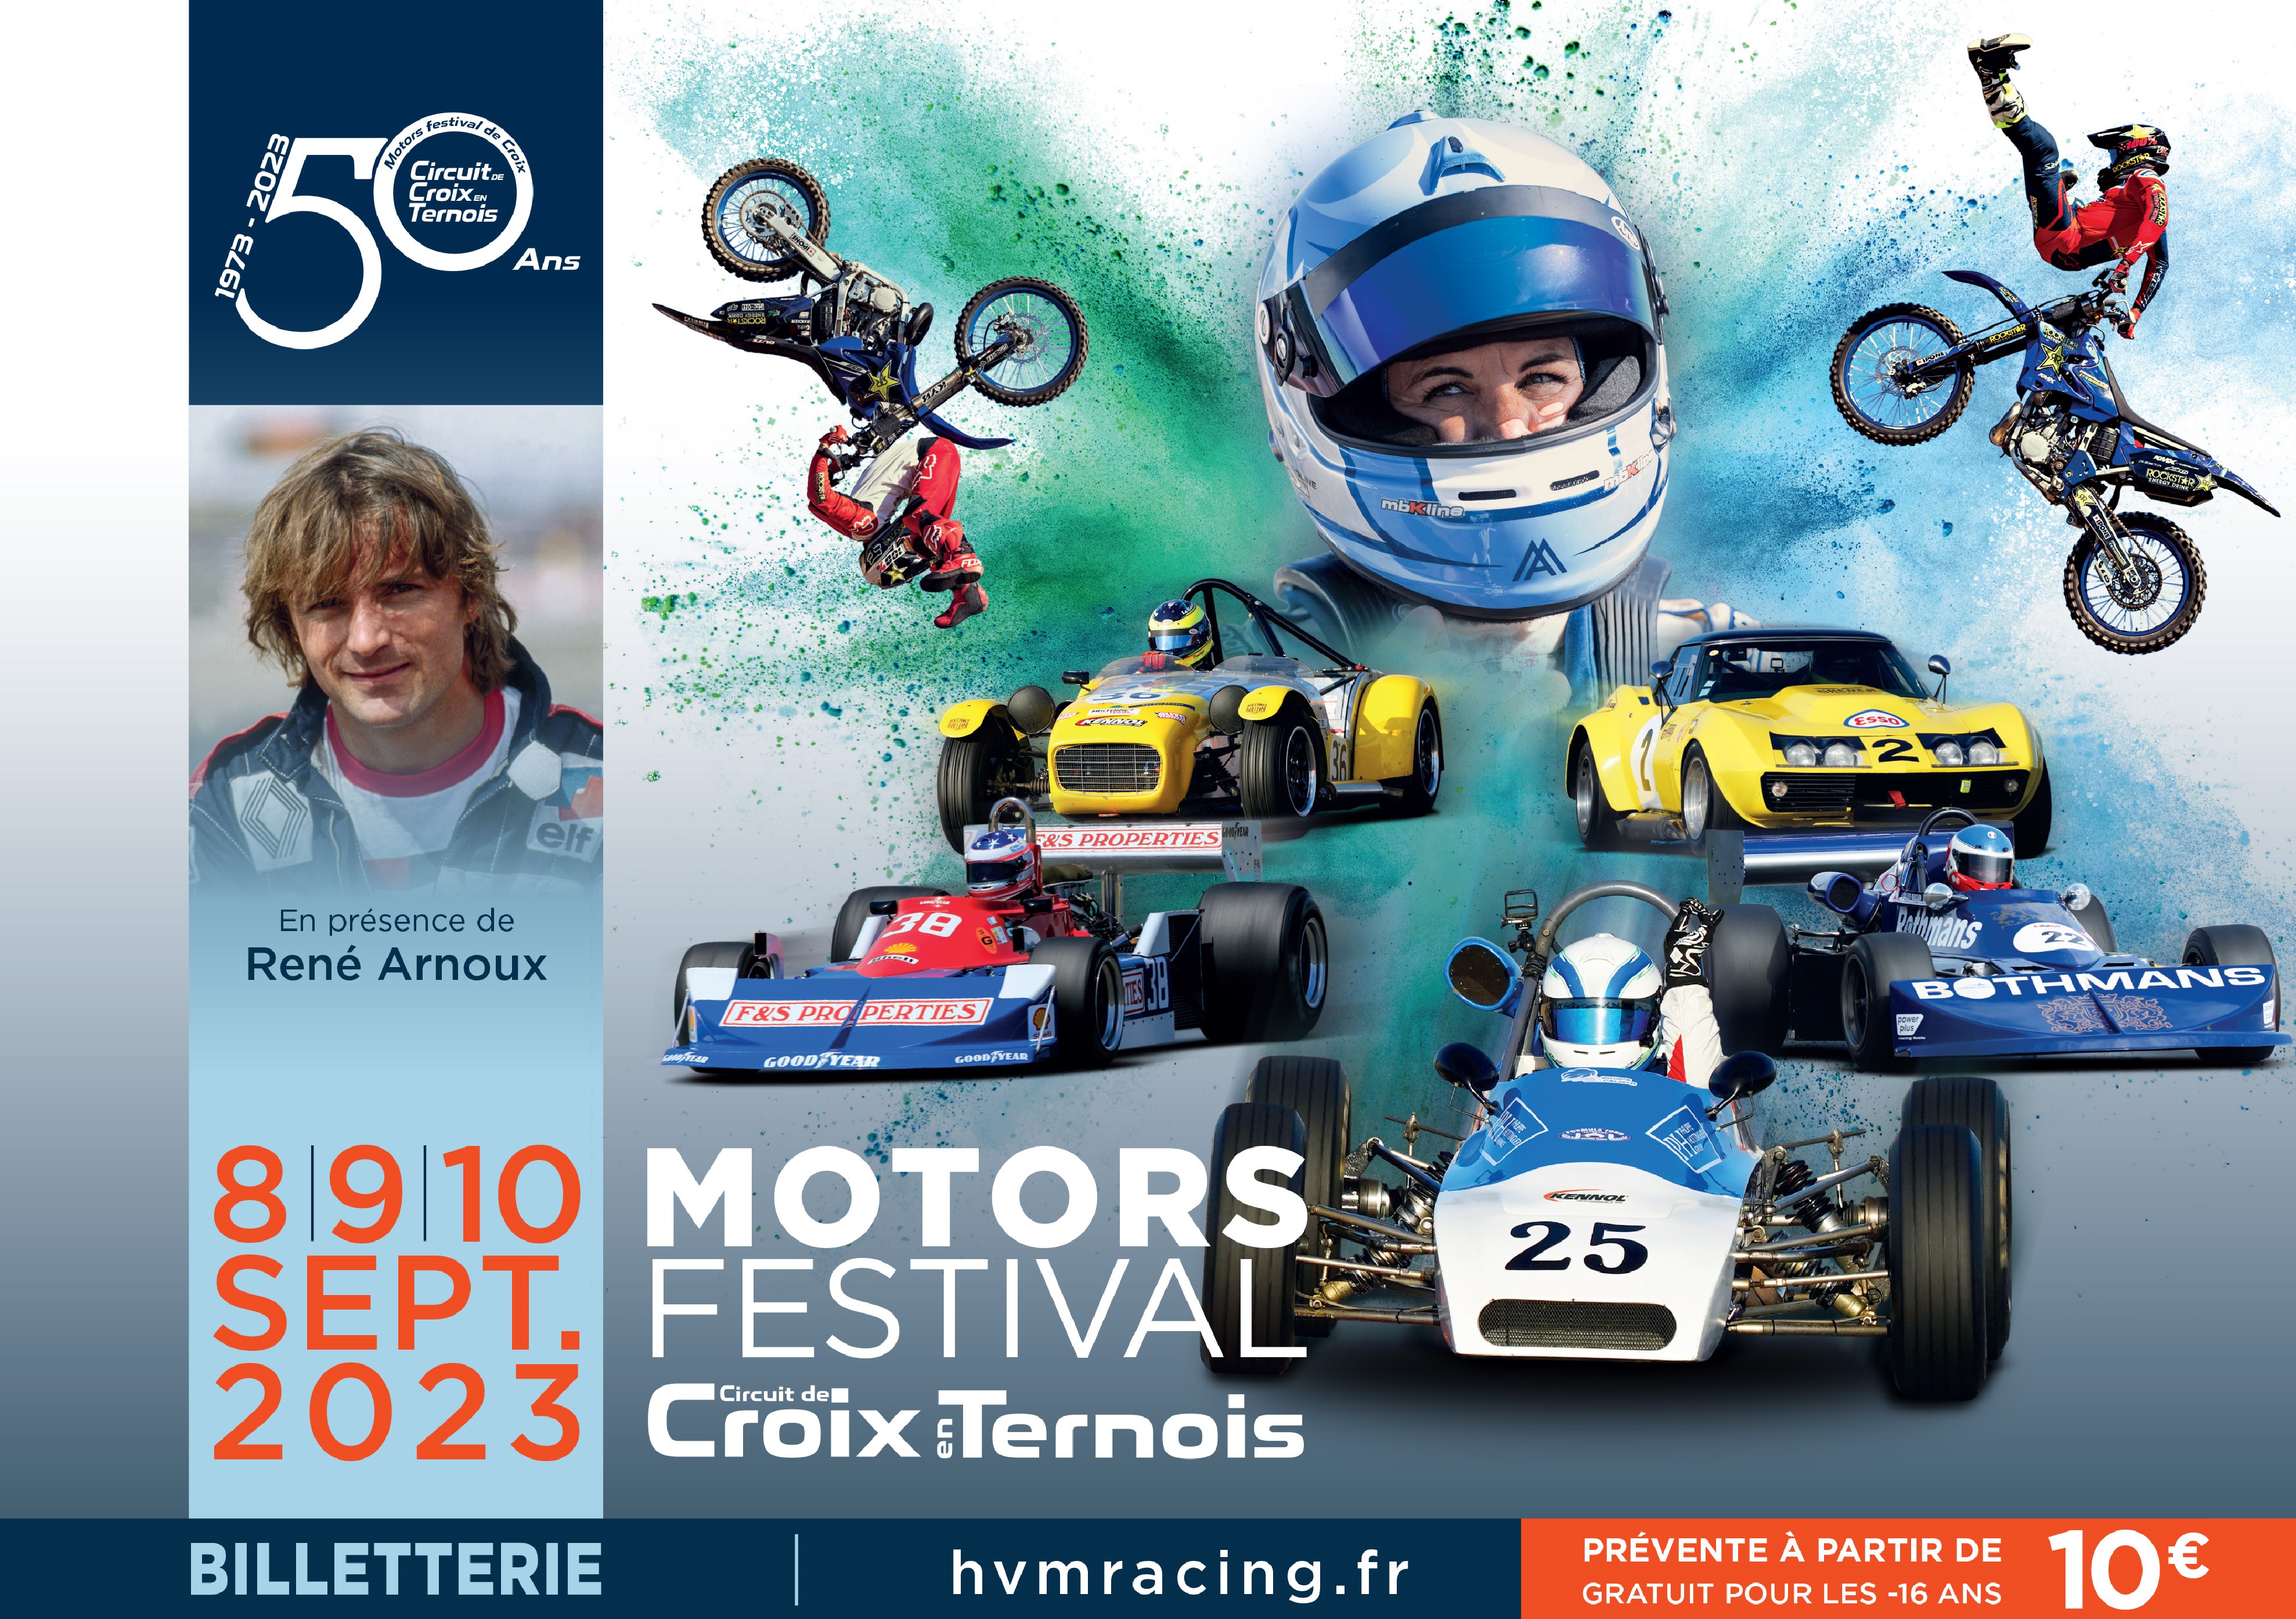 Press Release | Motors Festival des 50 ans du circuit de Croix